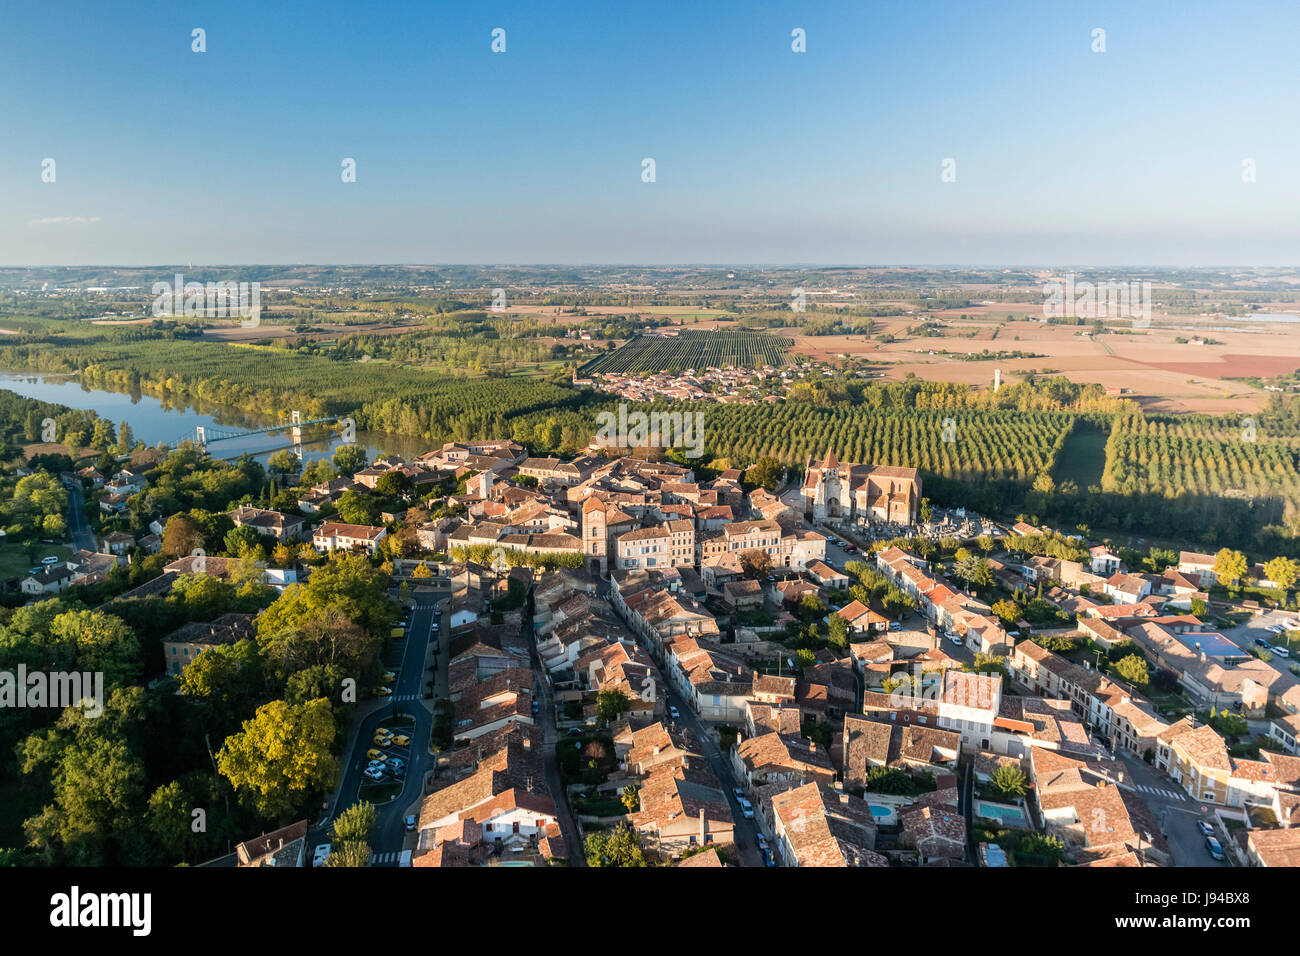 France, Tarn et Garonne, Auvillar, labelled Les Plus Beaux Villages de France (The Most beautiful Villages of France), (aerial view) Stock Photo